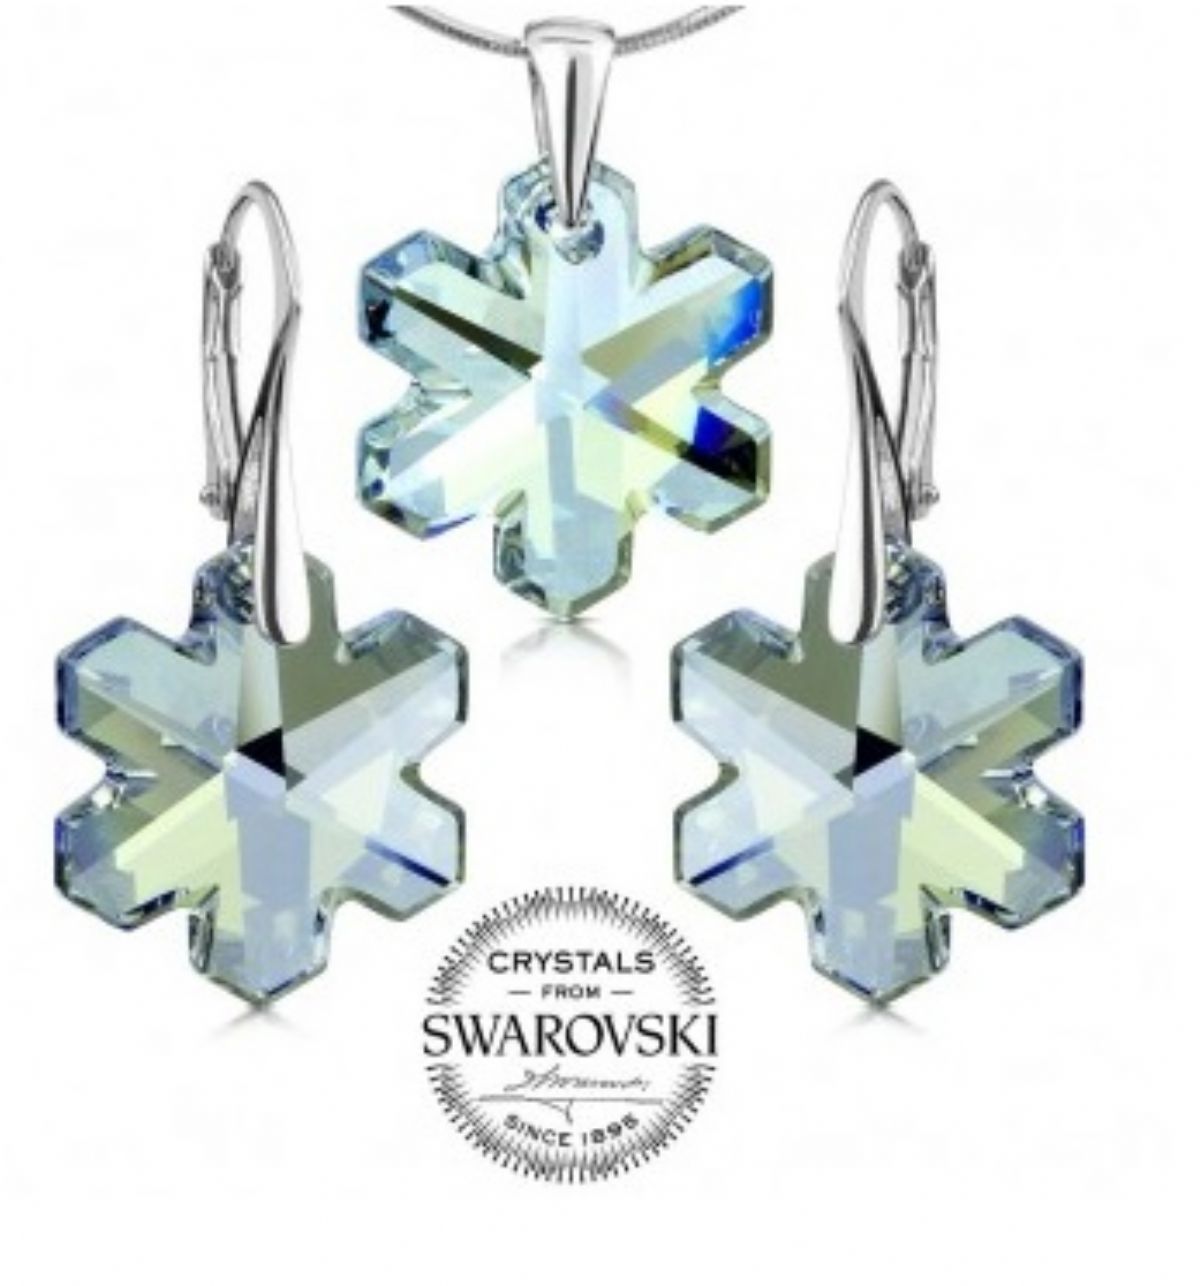 Stříbrný set s krystaly Swarovski - Vločka blue shade 1/1